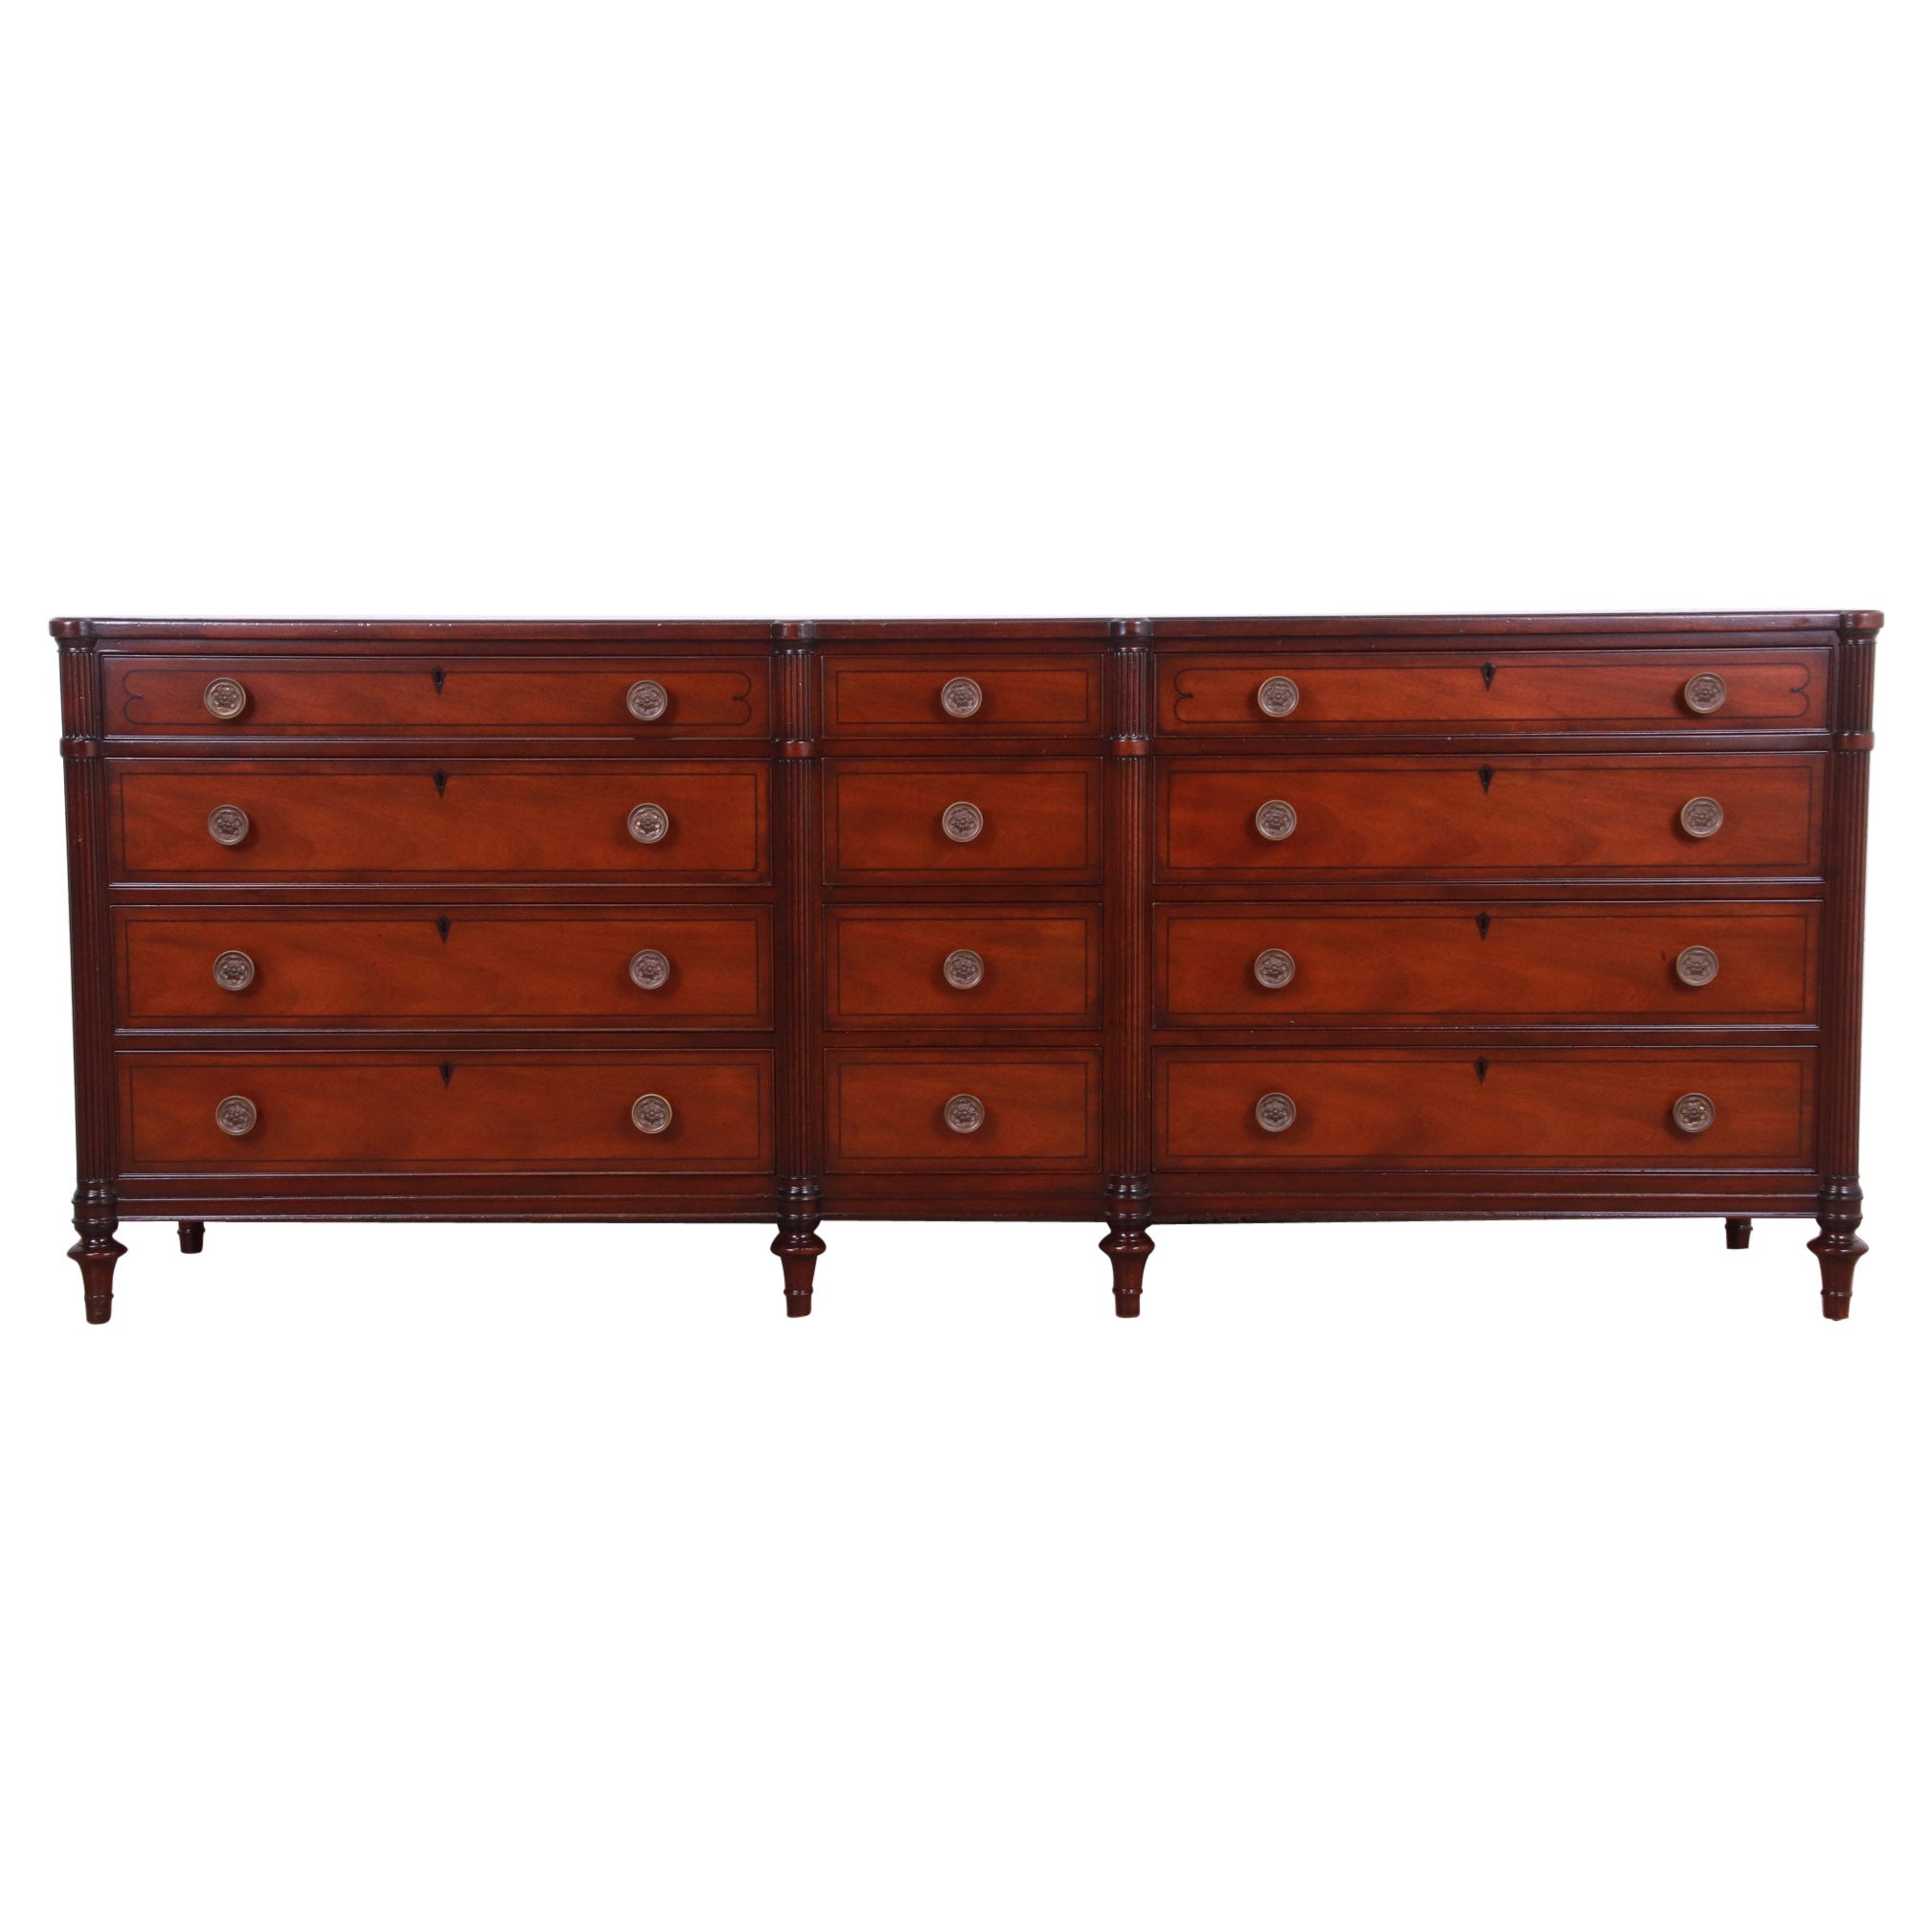 Kittinger French Regency Louis XVI Mahogany Twelve-Drawer Dresser, Refinished